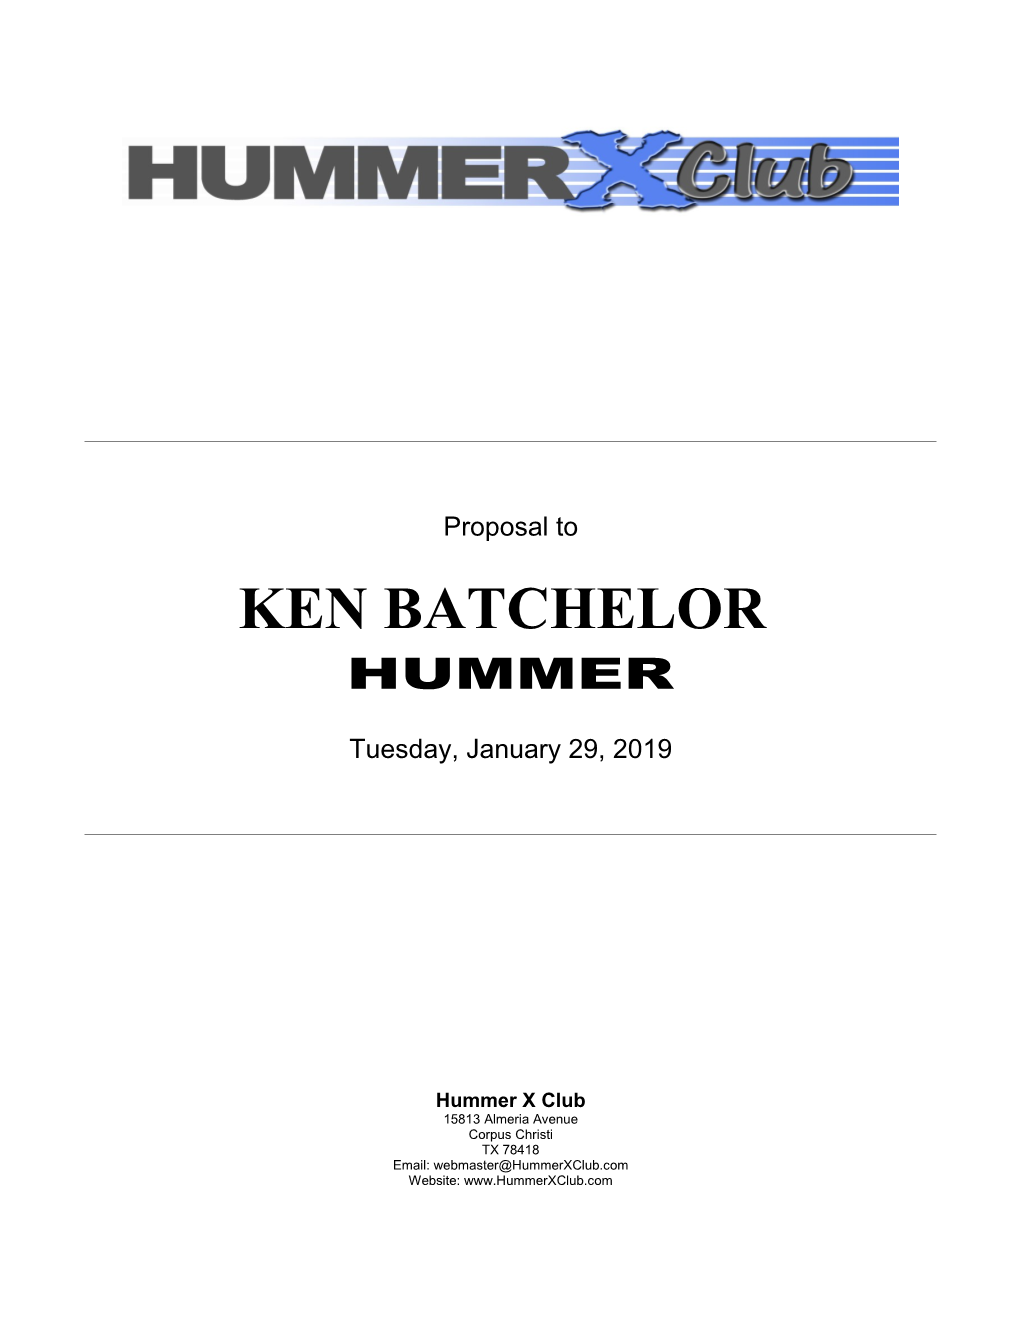 Proposal to Ken Batchelor Hummer